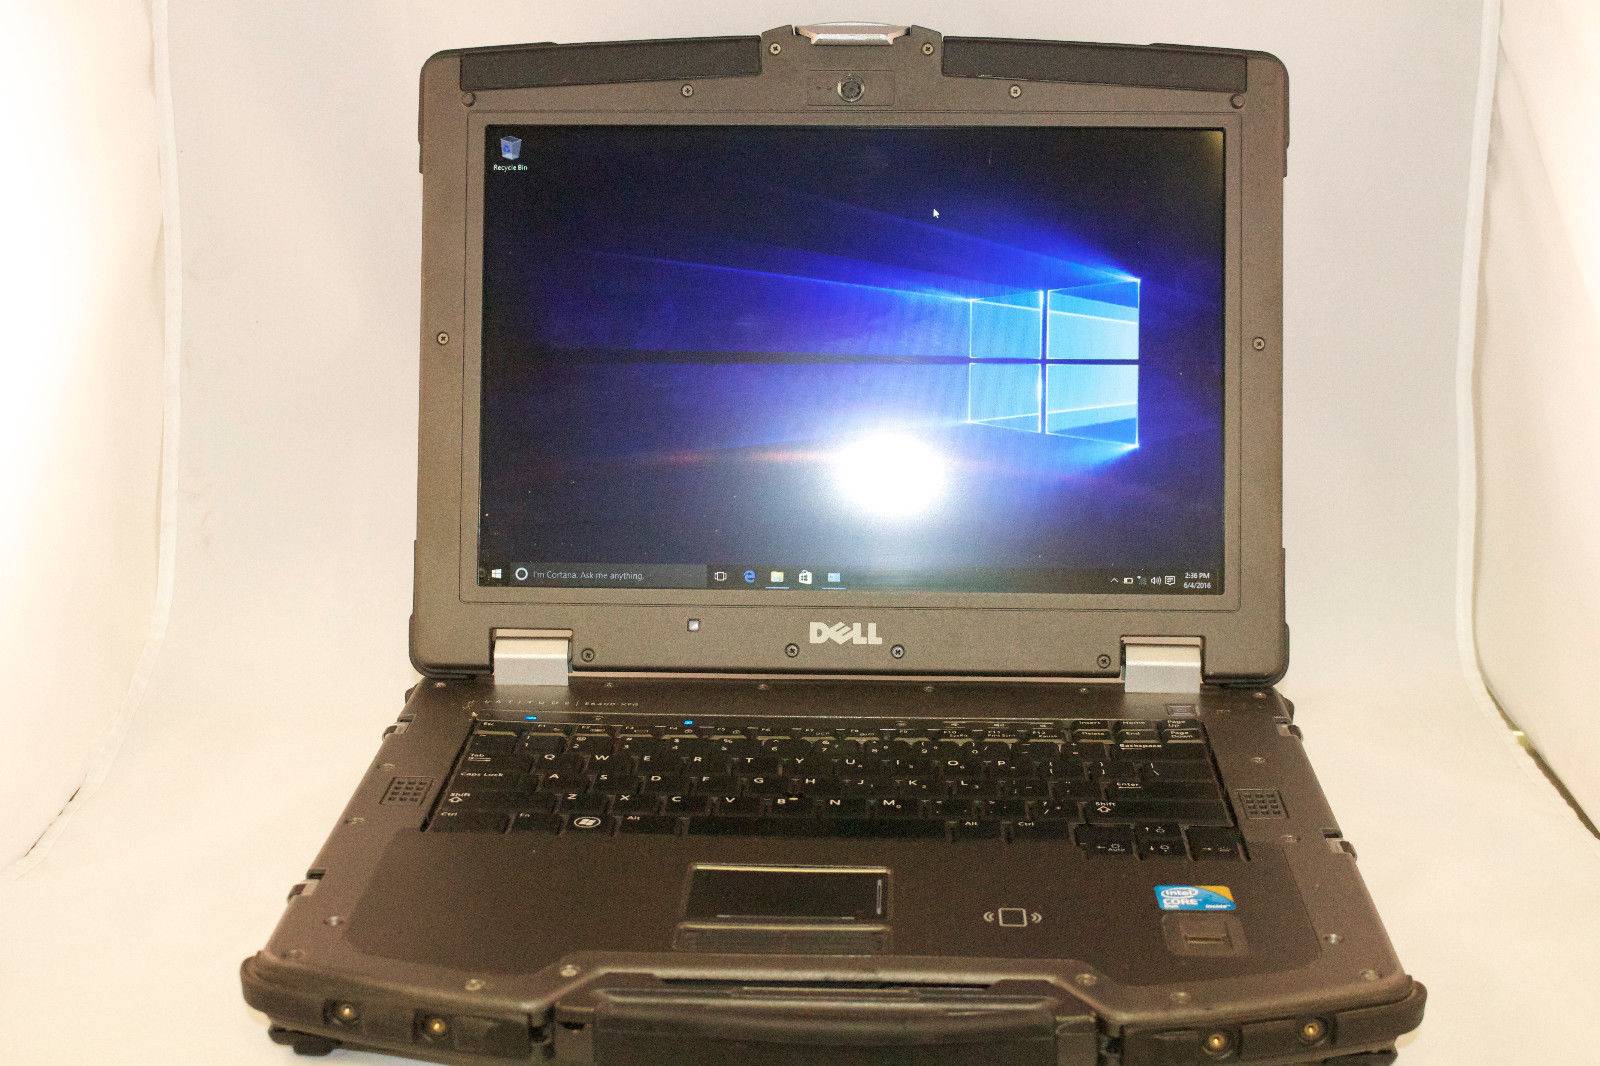 Dell Latitude E6400 XFR Laptop Computer Ballistic Rugged Windows 10 Pro